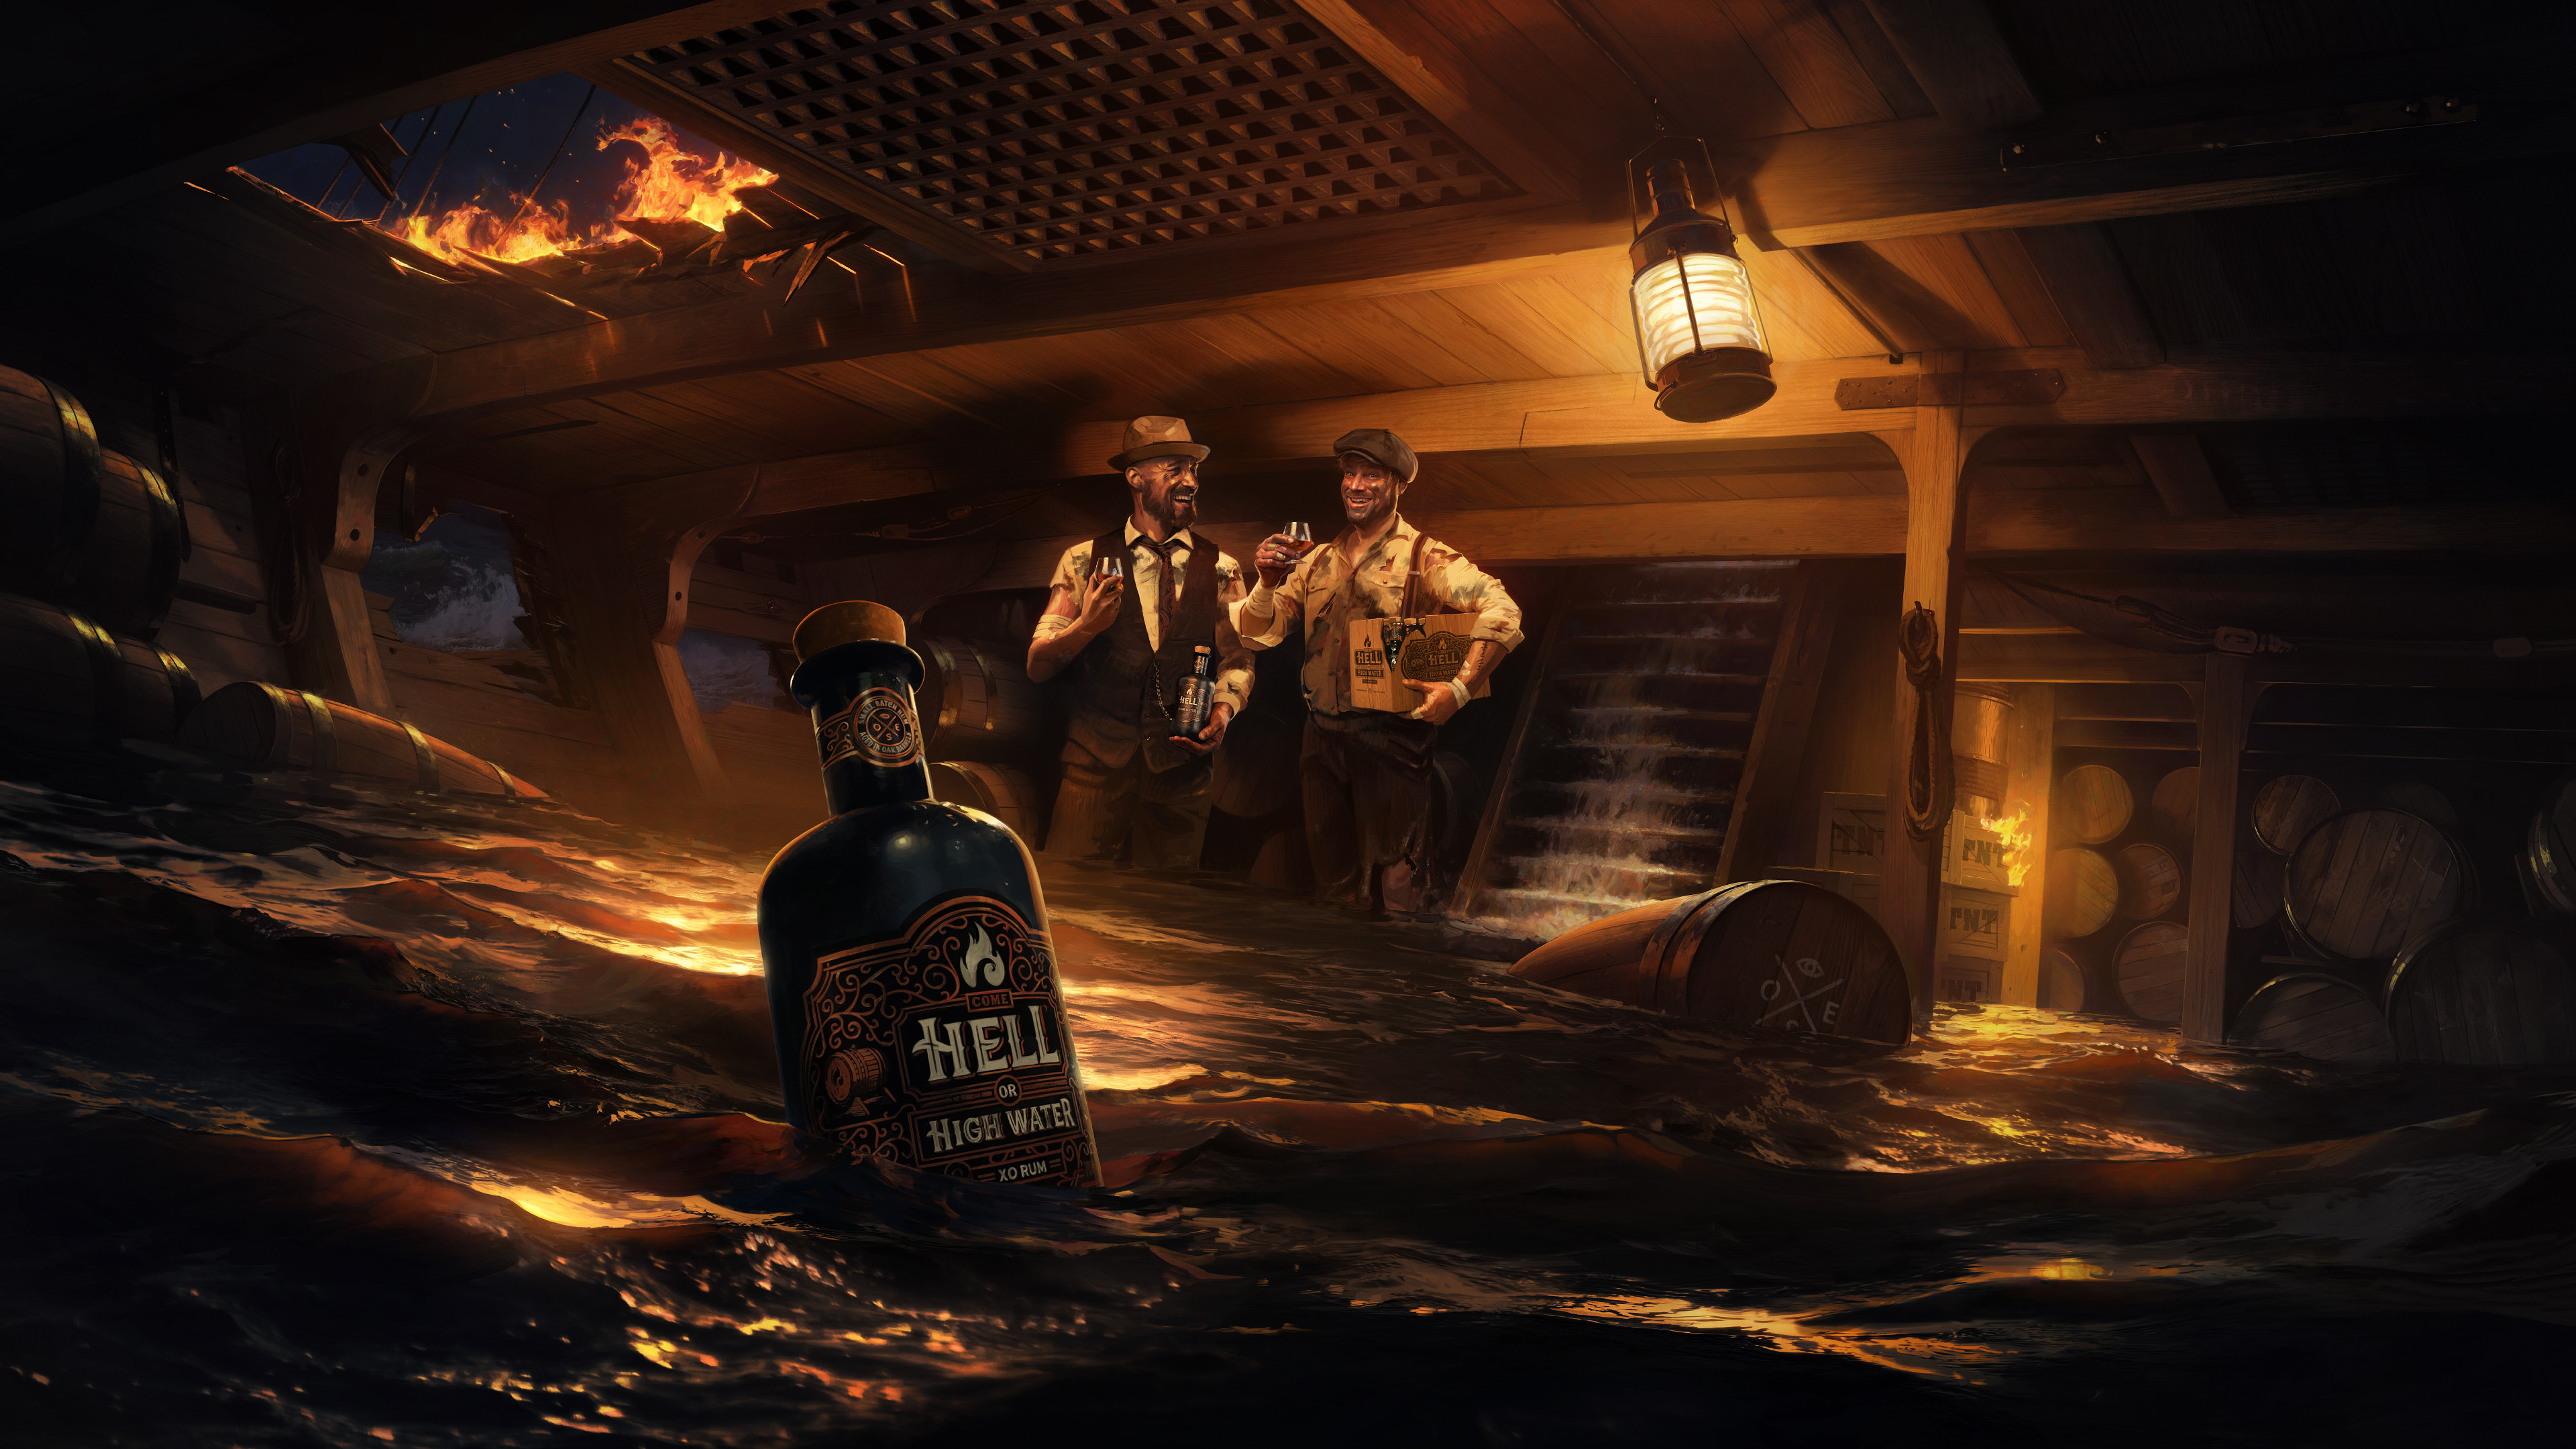 Artwork Rum Ship Water Fire Men Lights Alcohol Bottles Barrel 3840x2160